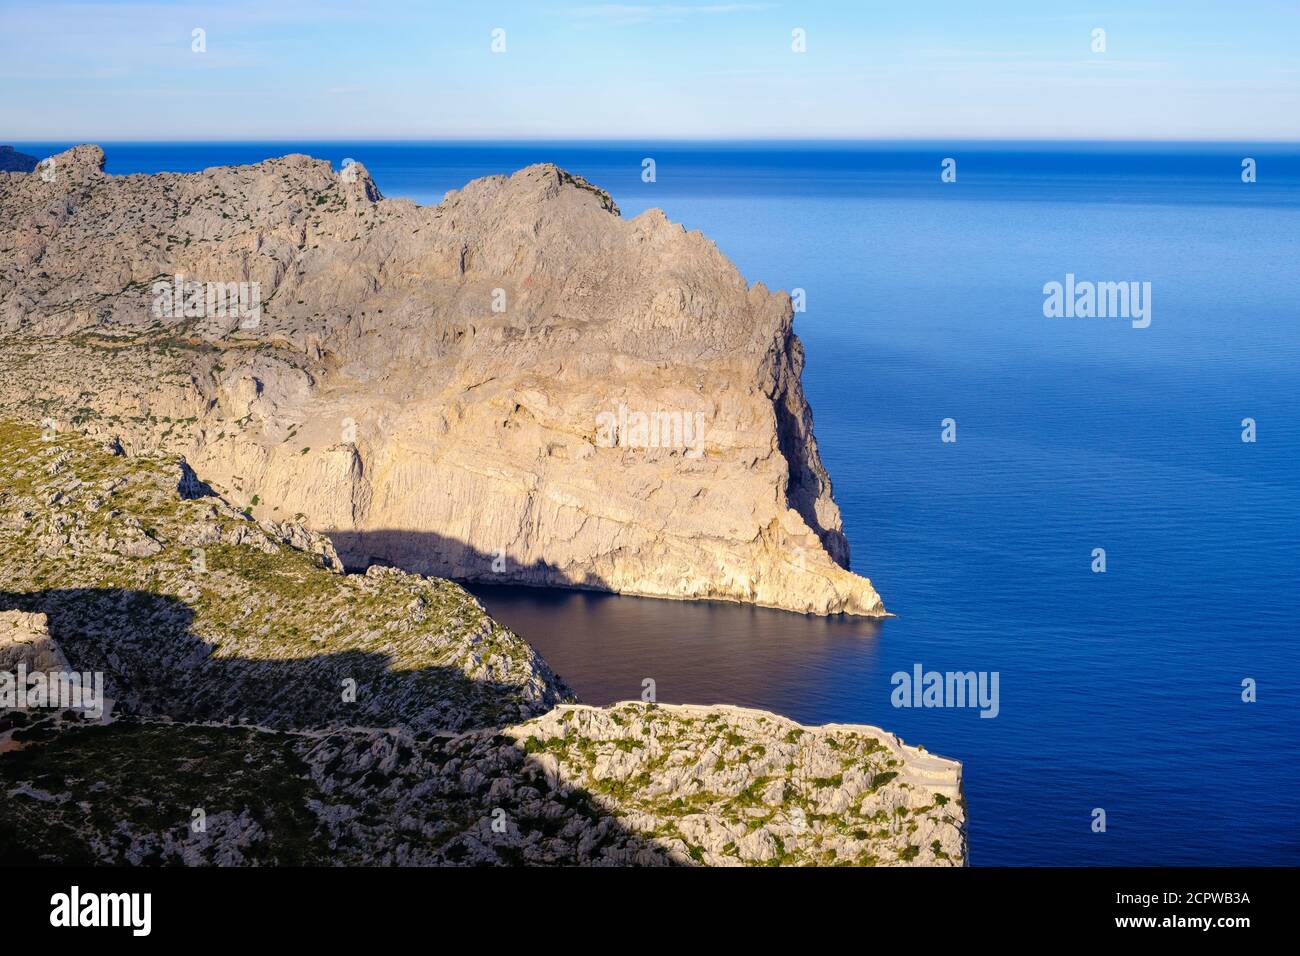 Mirador es Colomer et Punta de la Salada, vue de Talaia díAlbercutx, péninsule de Formentor, près de PollenÁa, Majorque, Iles Baléares, Espagne Banque D'Images